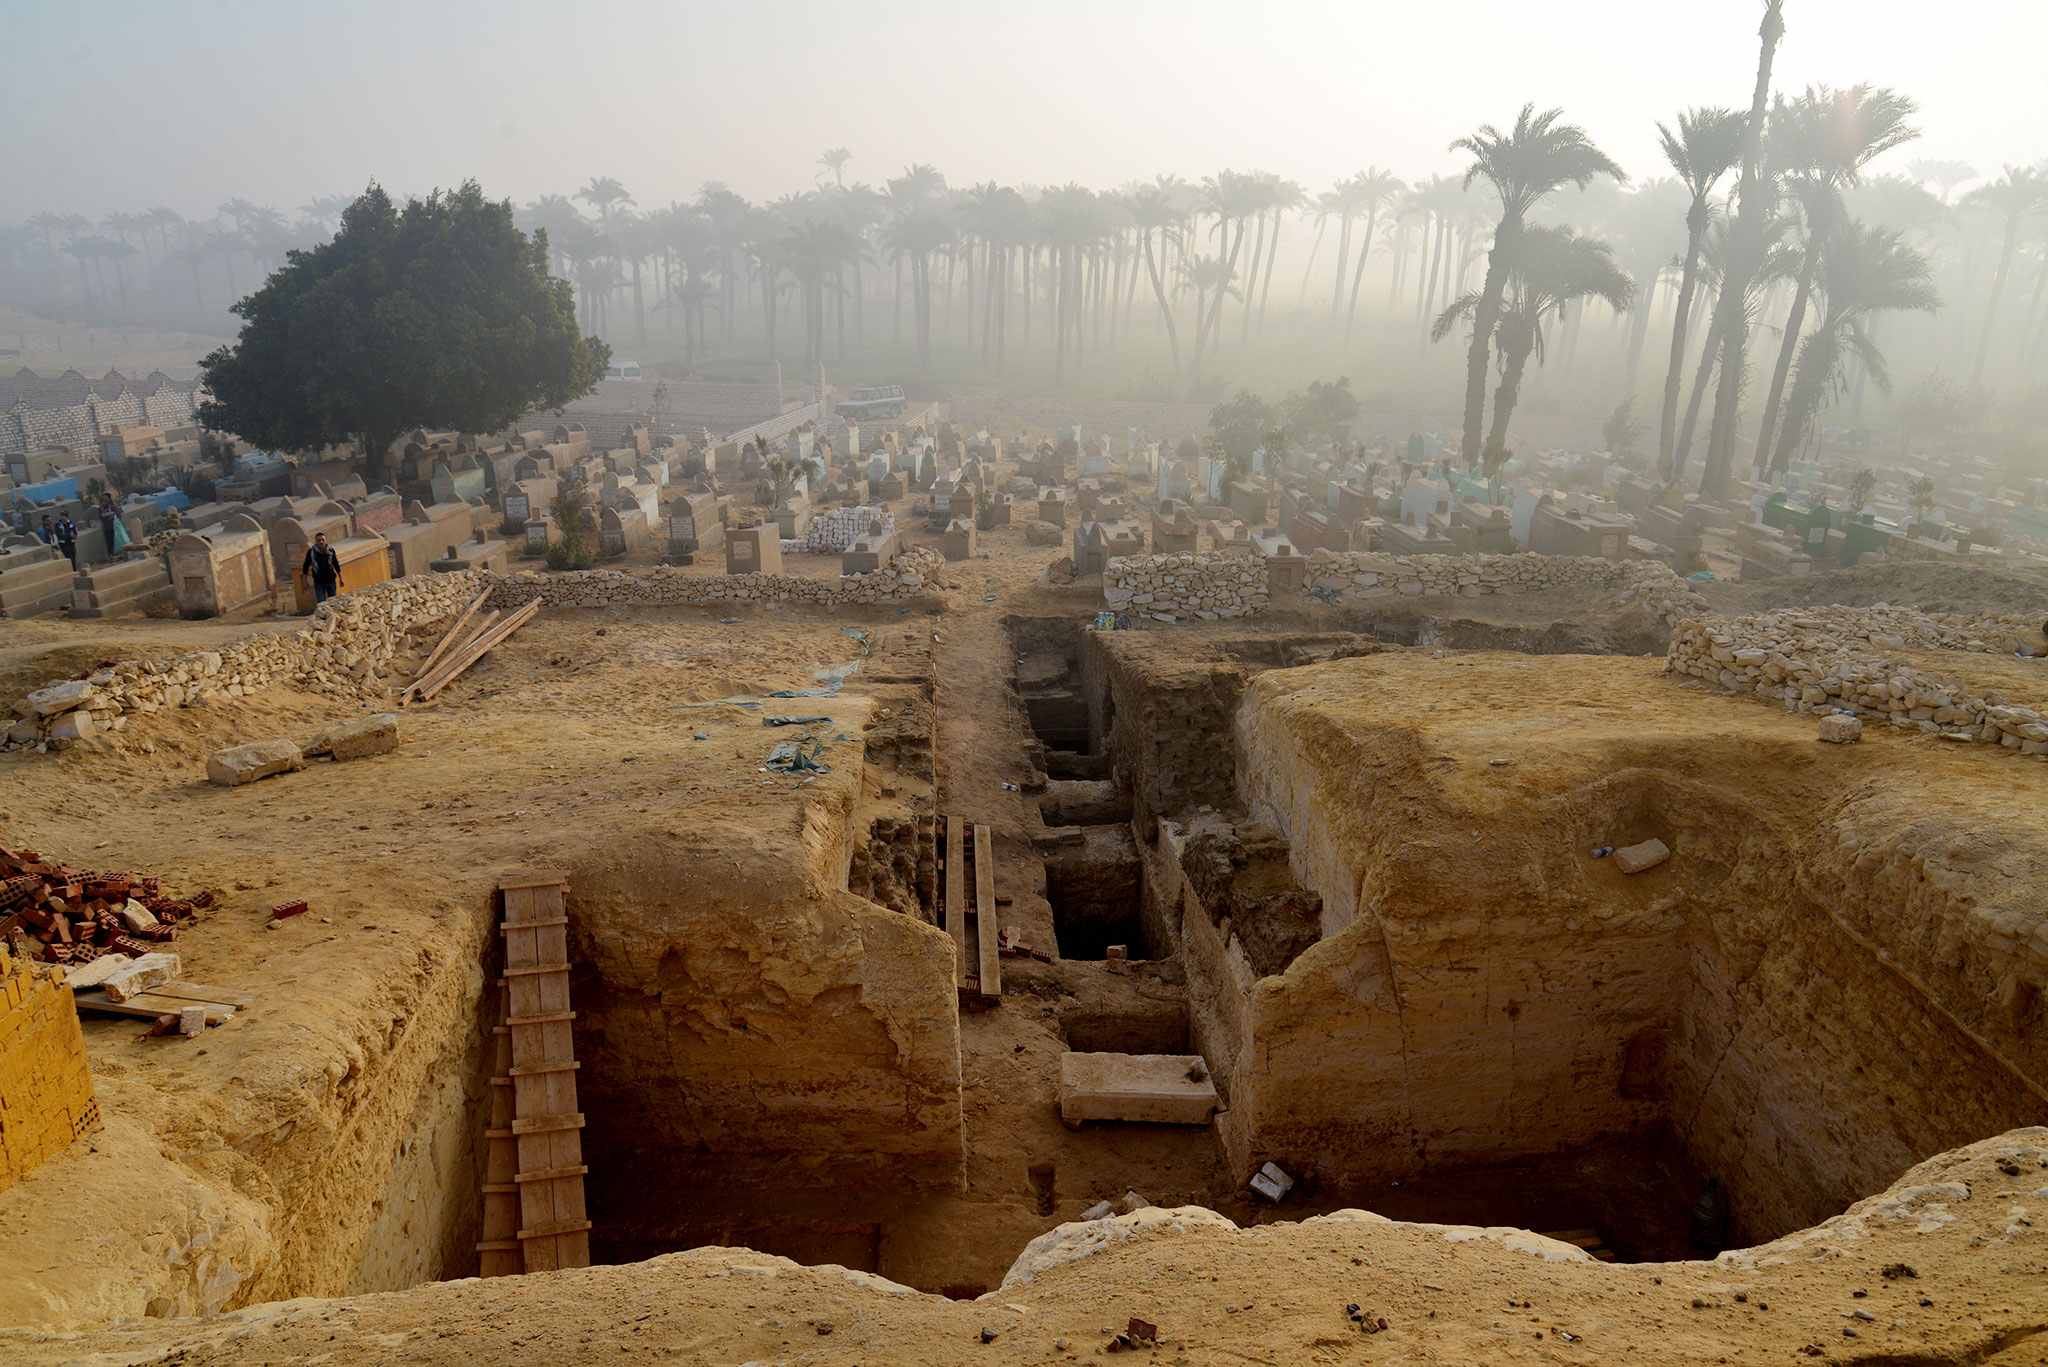 802 ngôi mộ và 'Cuốn sách của người chết' được phát hiện tại nghĩa địa Lisht ở Ai Cập 1